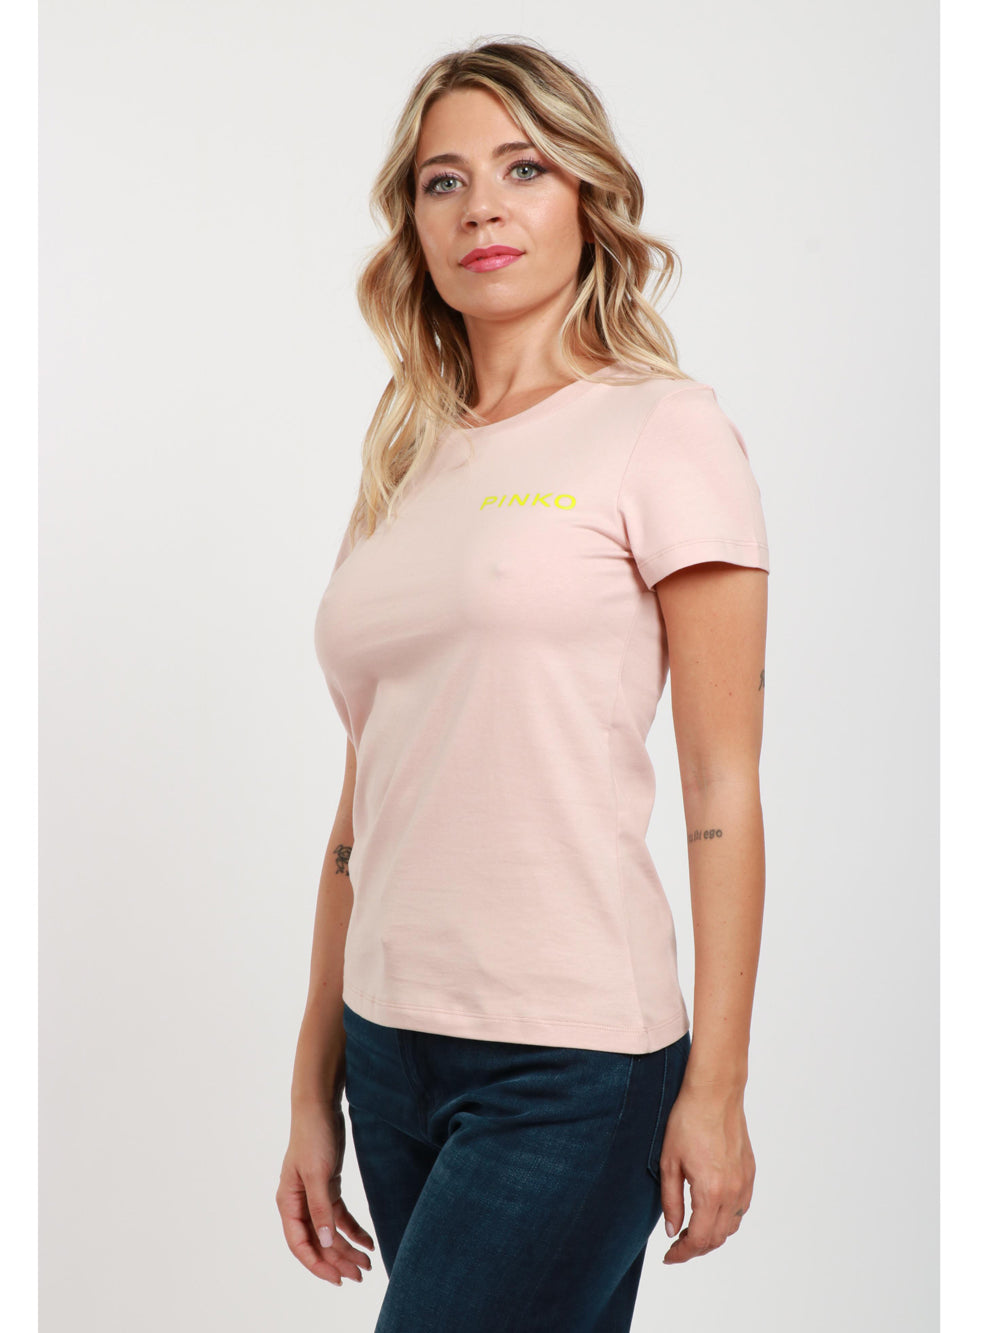 PINKO T-Shirt Bussolotto Girocollo in Cotone Cipria con Logo e Scritta Gialla Rosa/lime